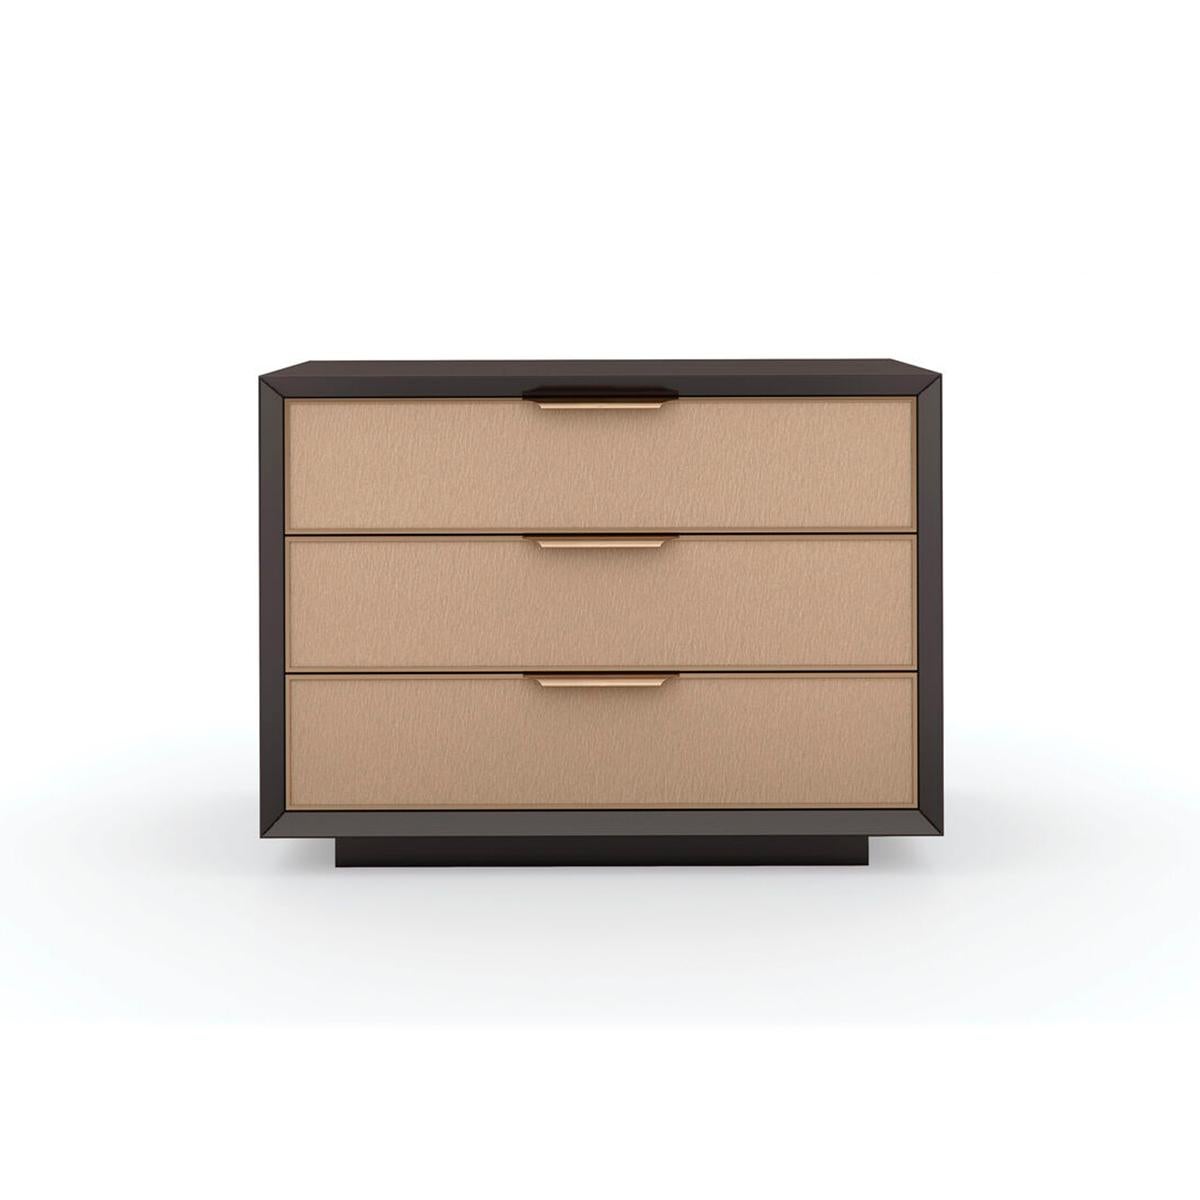 Mid Century Modern Three Drawer Nightstand, ein Nachttisch mit klaren Linien, der Minimalismus mit Elementen des modernen Designs aus der Mitte des Jahrhunderts verbindet. Die drei Schubladen mit sanft schließenden Schubladen in kontrastierendem